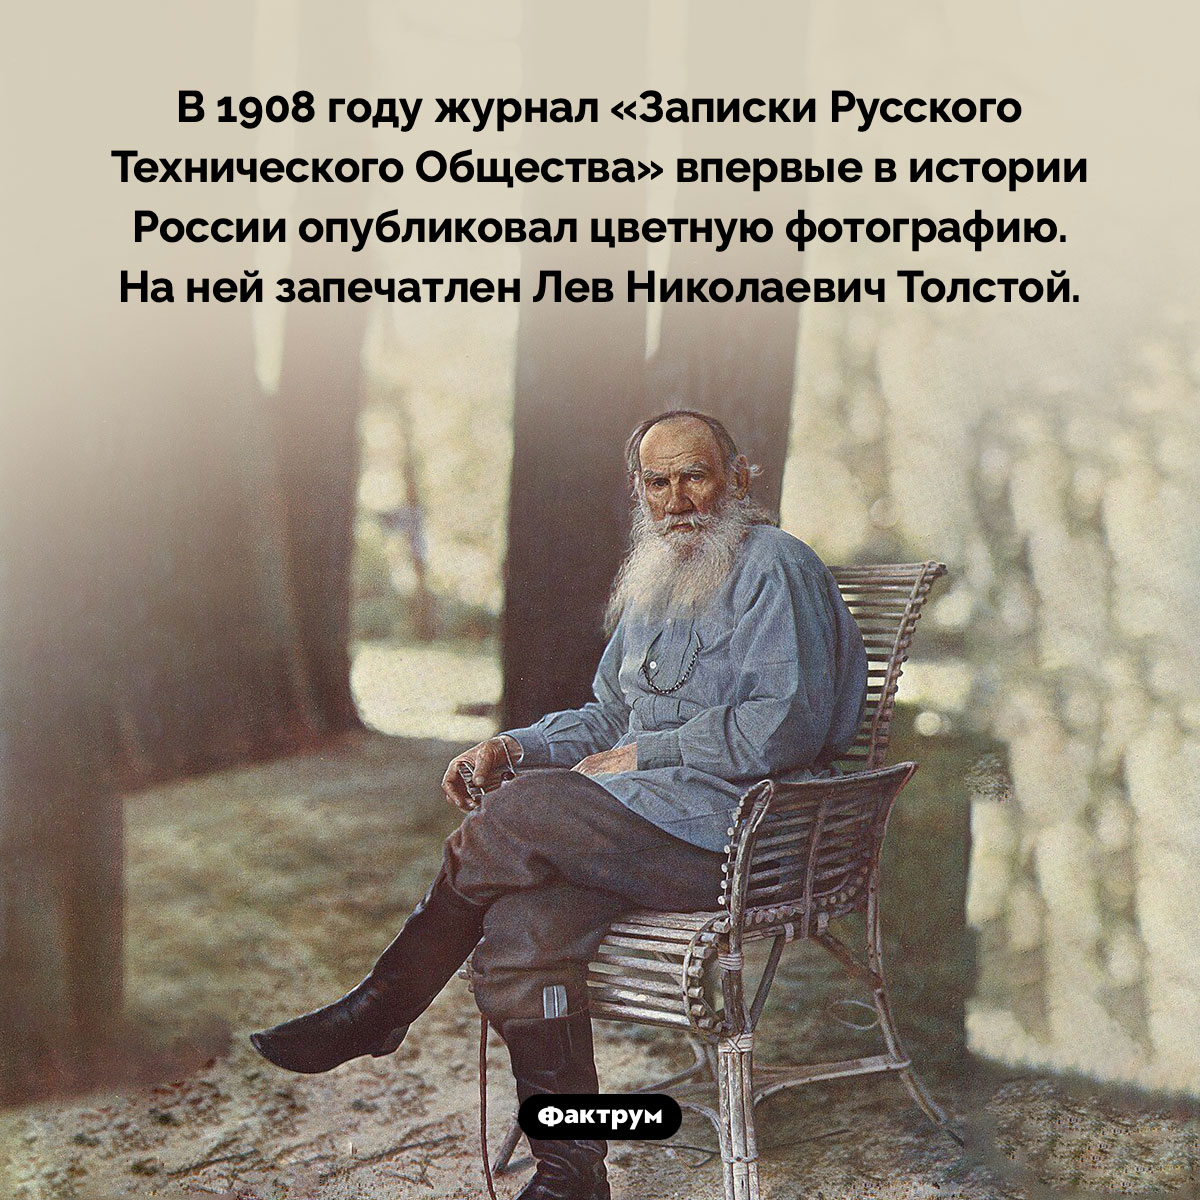 На первой цветной фотографии, опубликованной в России запечатлён Лев Толстой